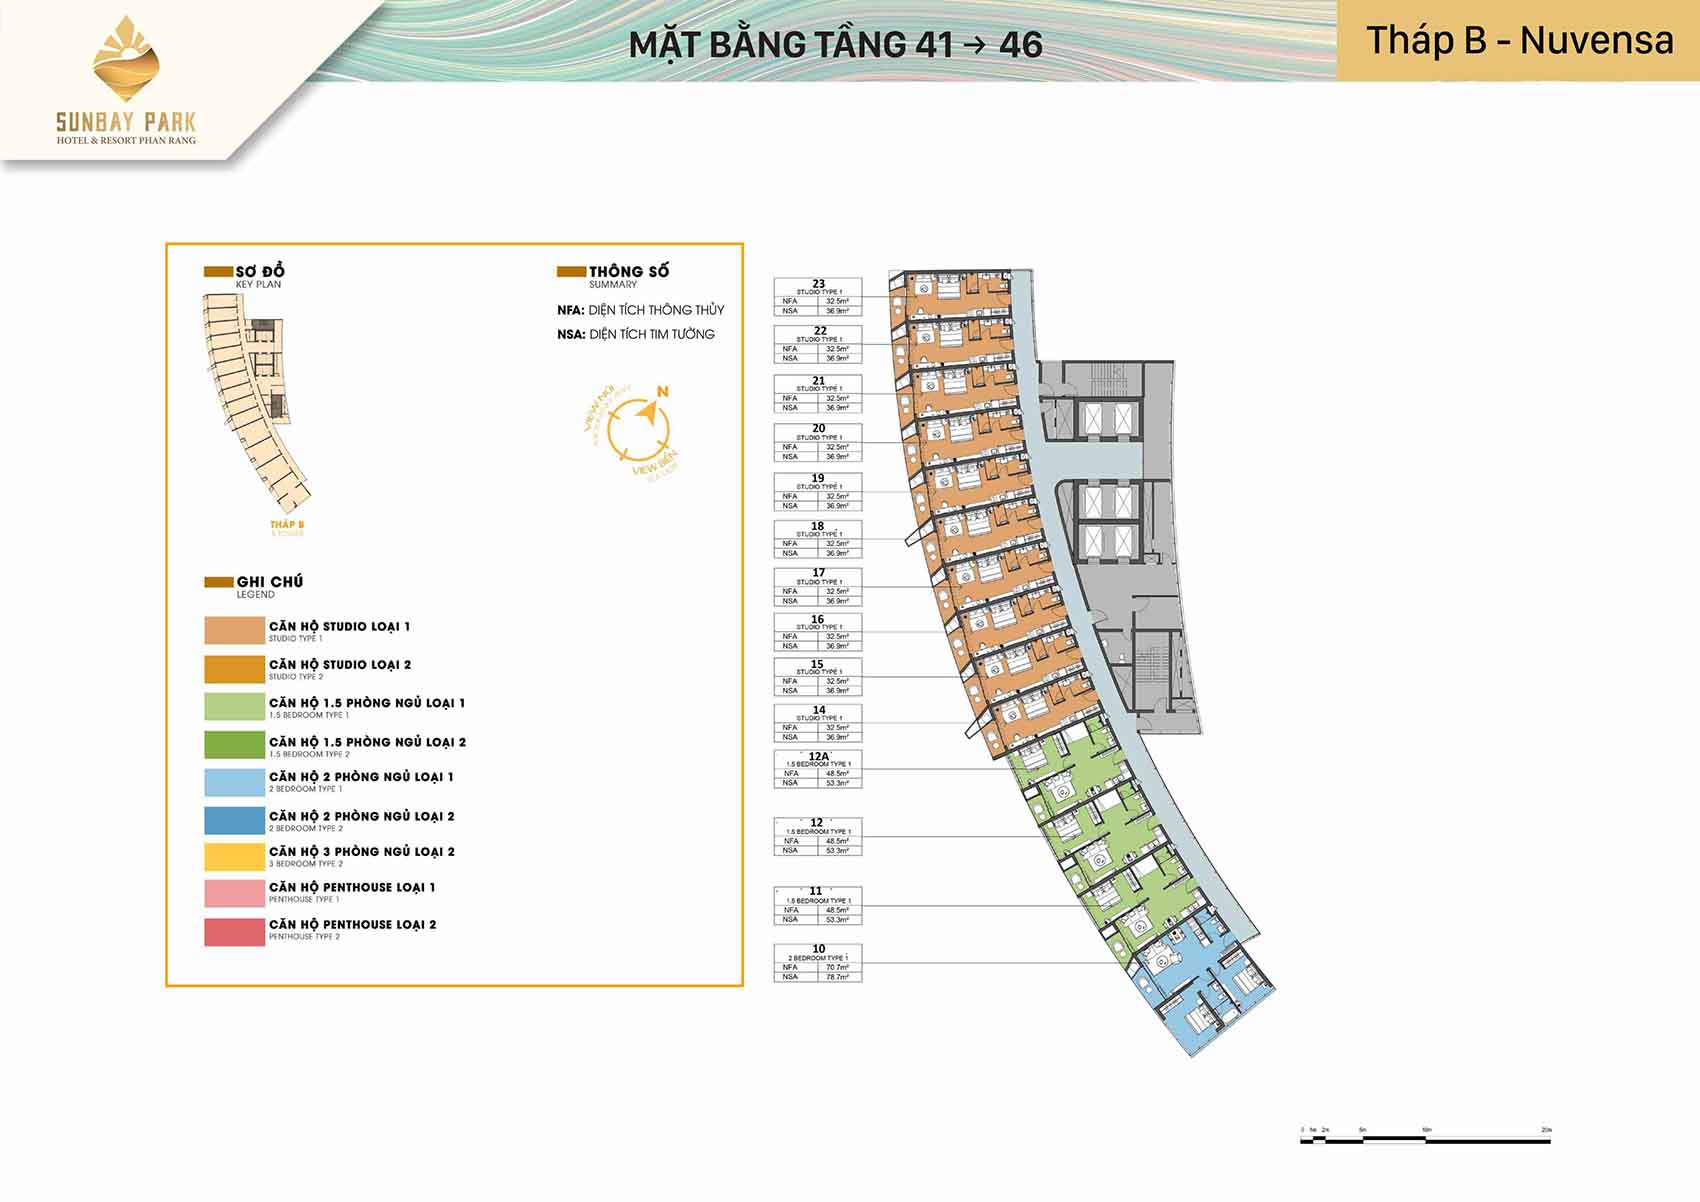 Mặt bằng thiết kế tòa B Nuvensa tầng từ 41-46 dự án Sunbay Park Phan Rang Ninh Thuận